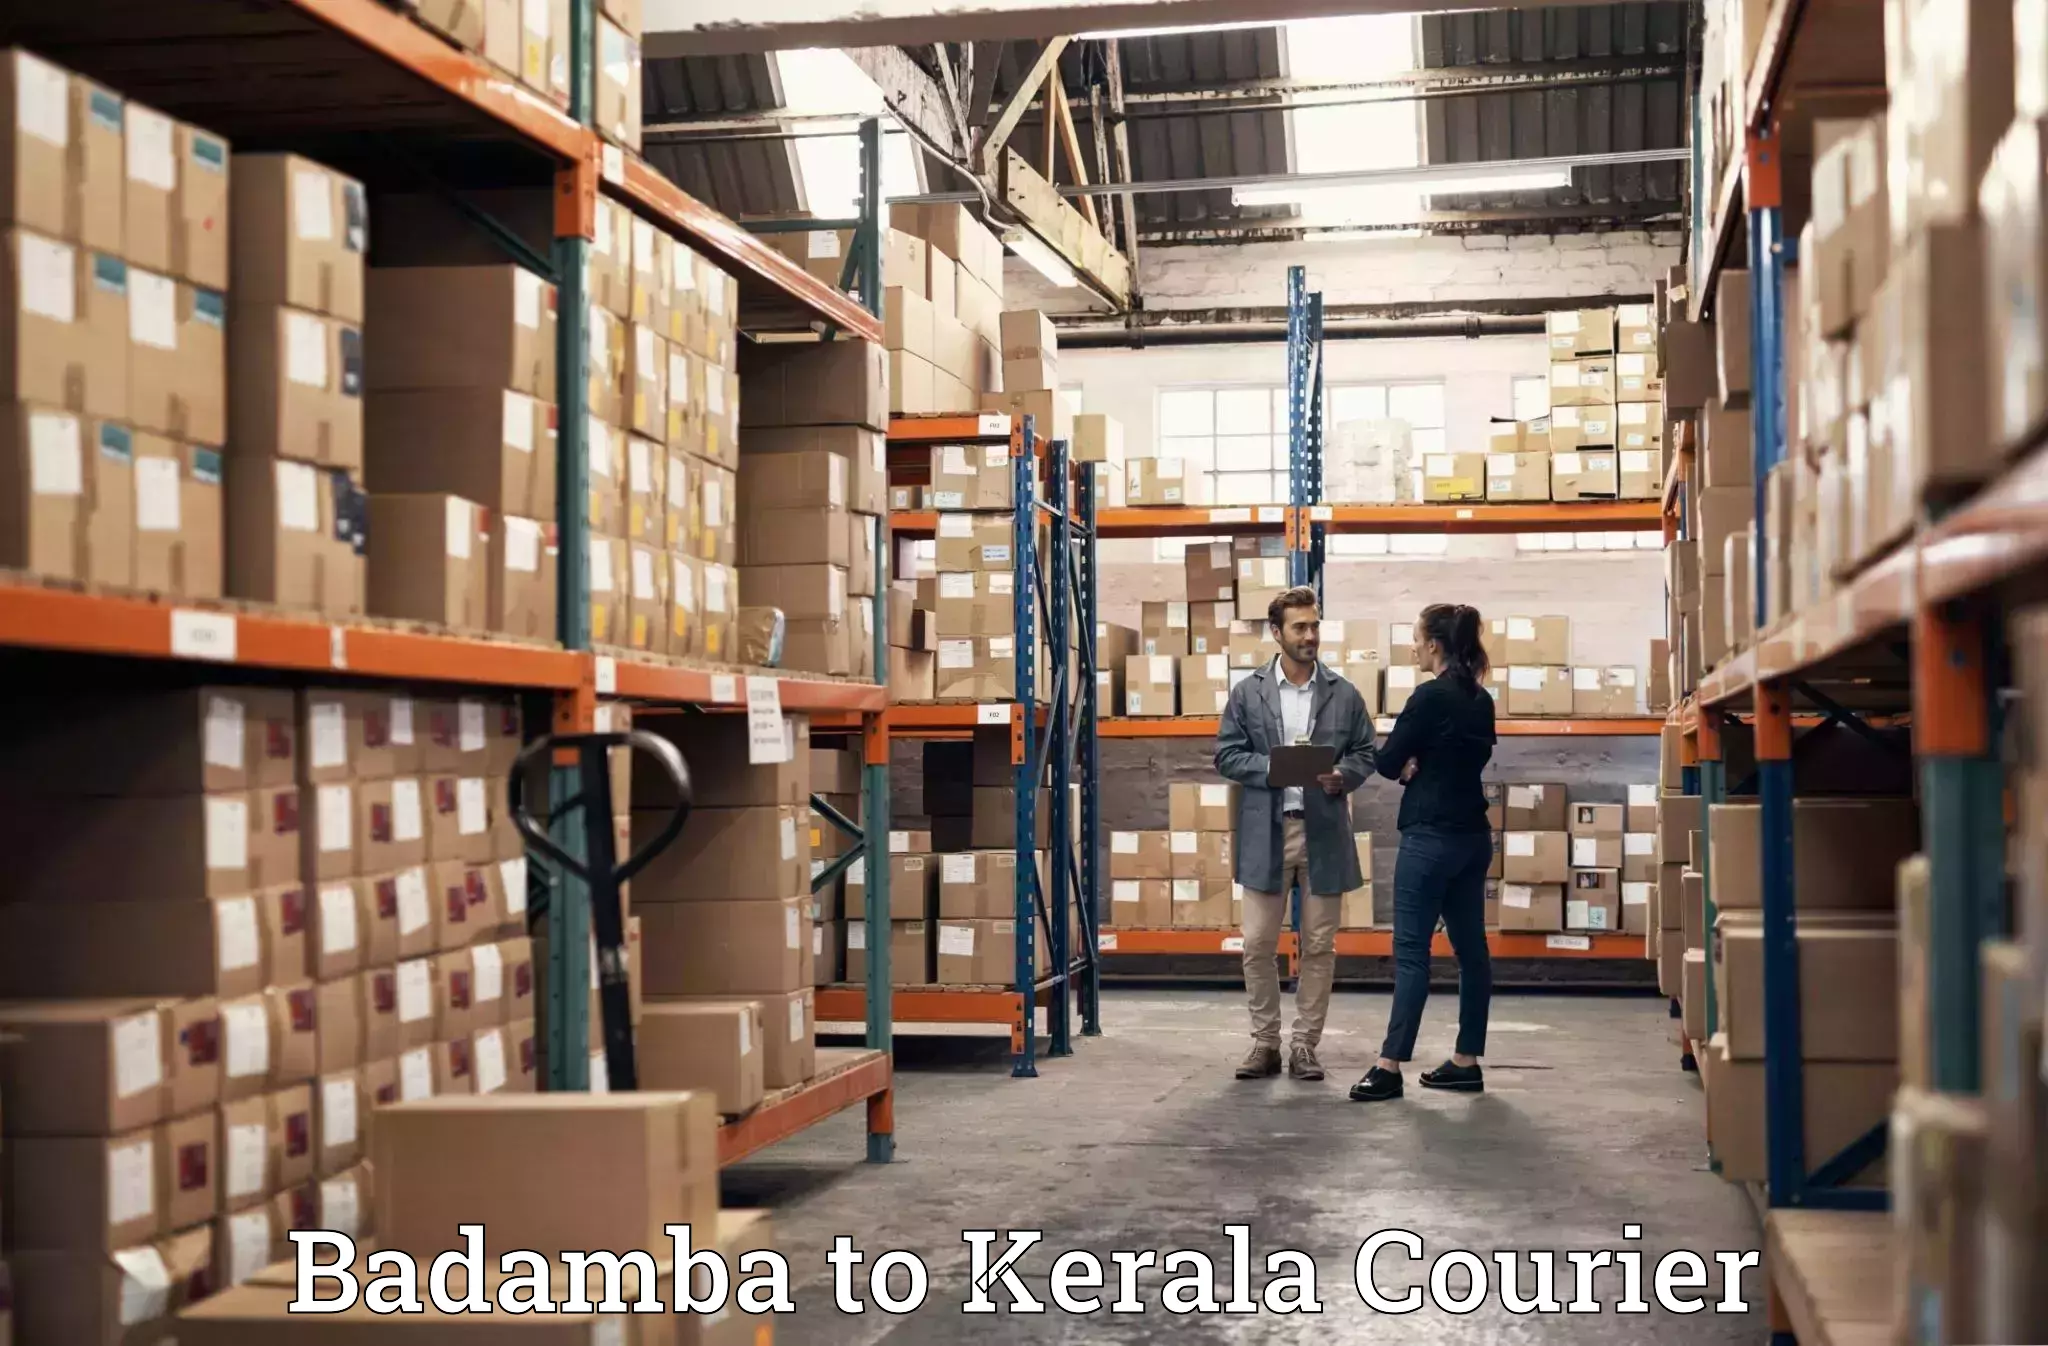 Home goods moving company Badamba to Kerala